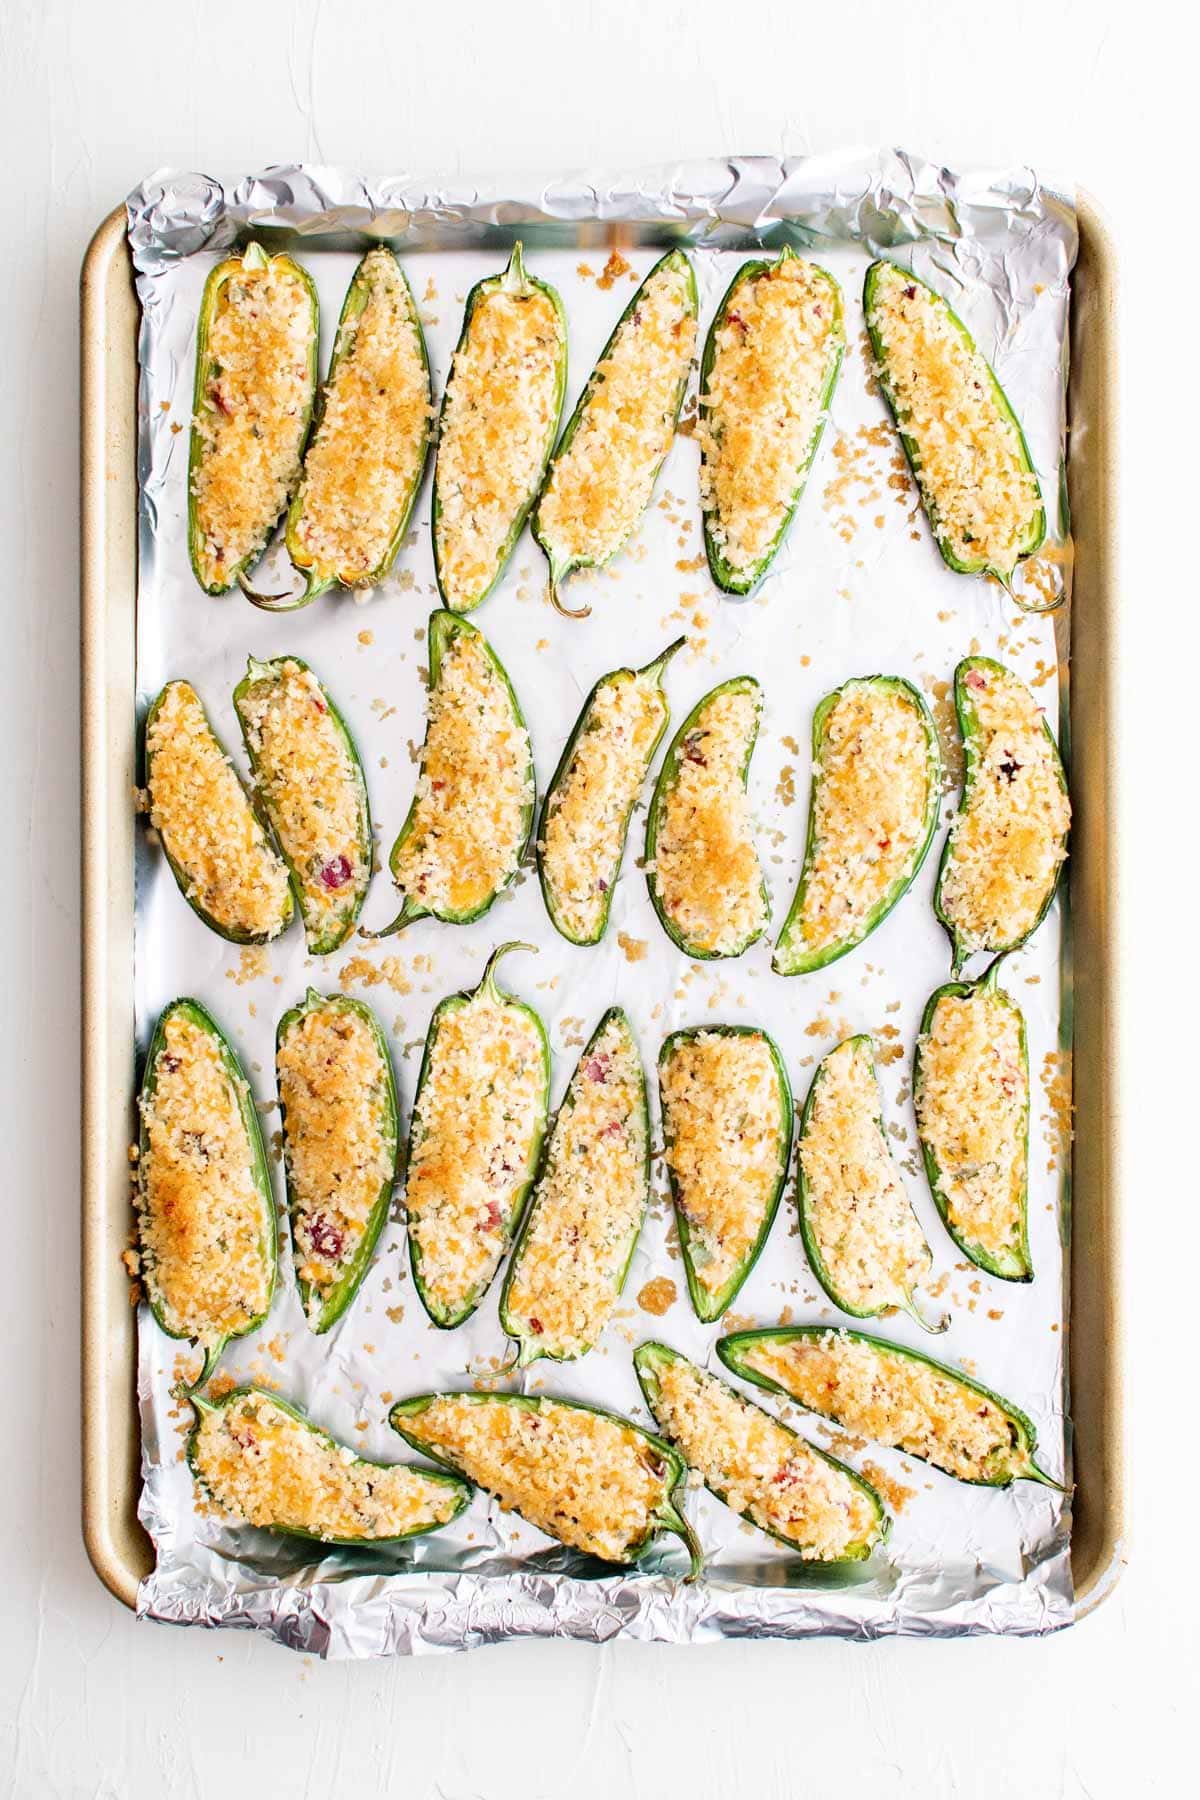 baked jalapeno poppers on baking sheet